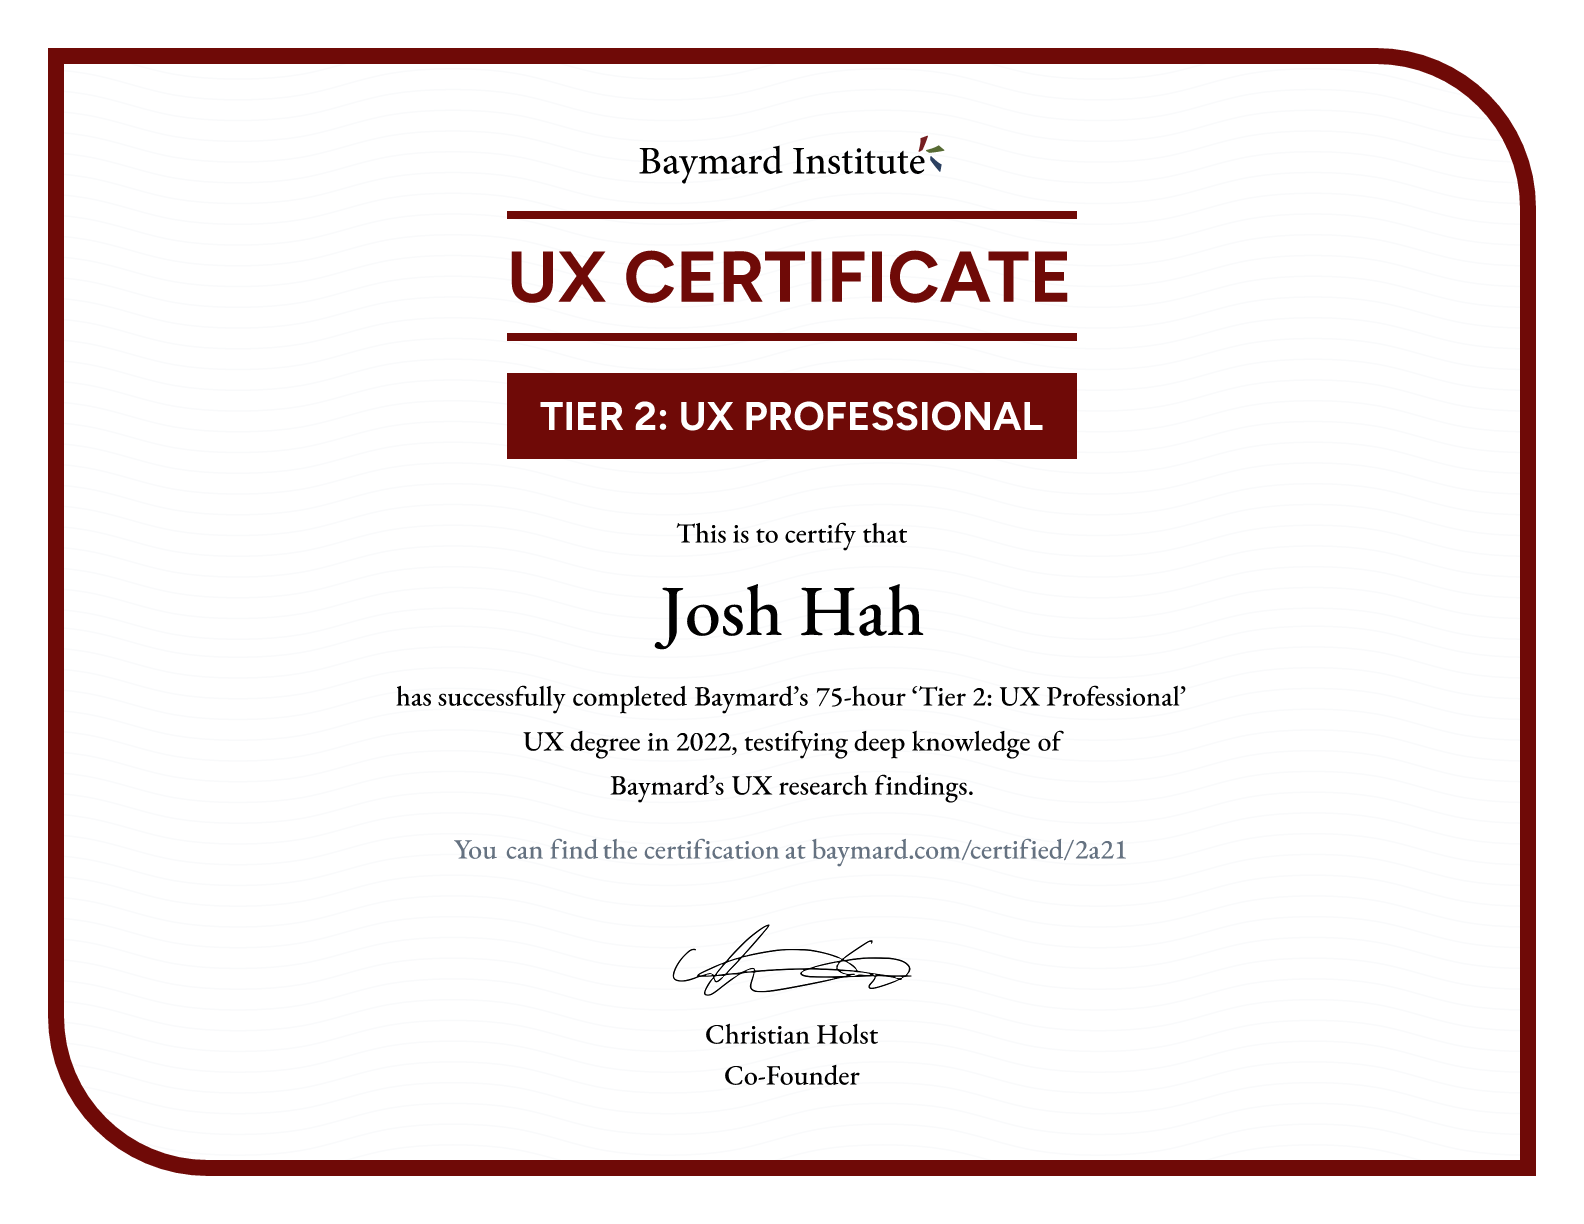 Josh Hah’s certificate